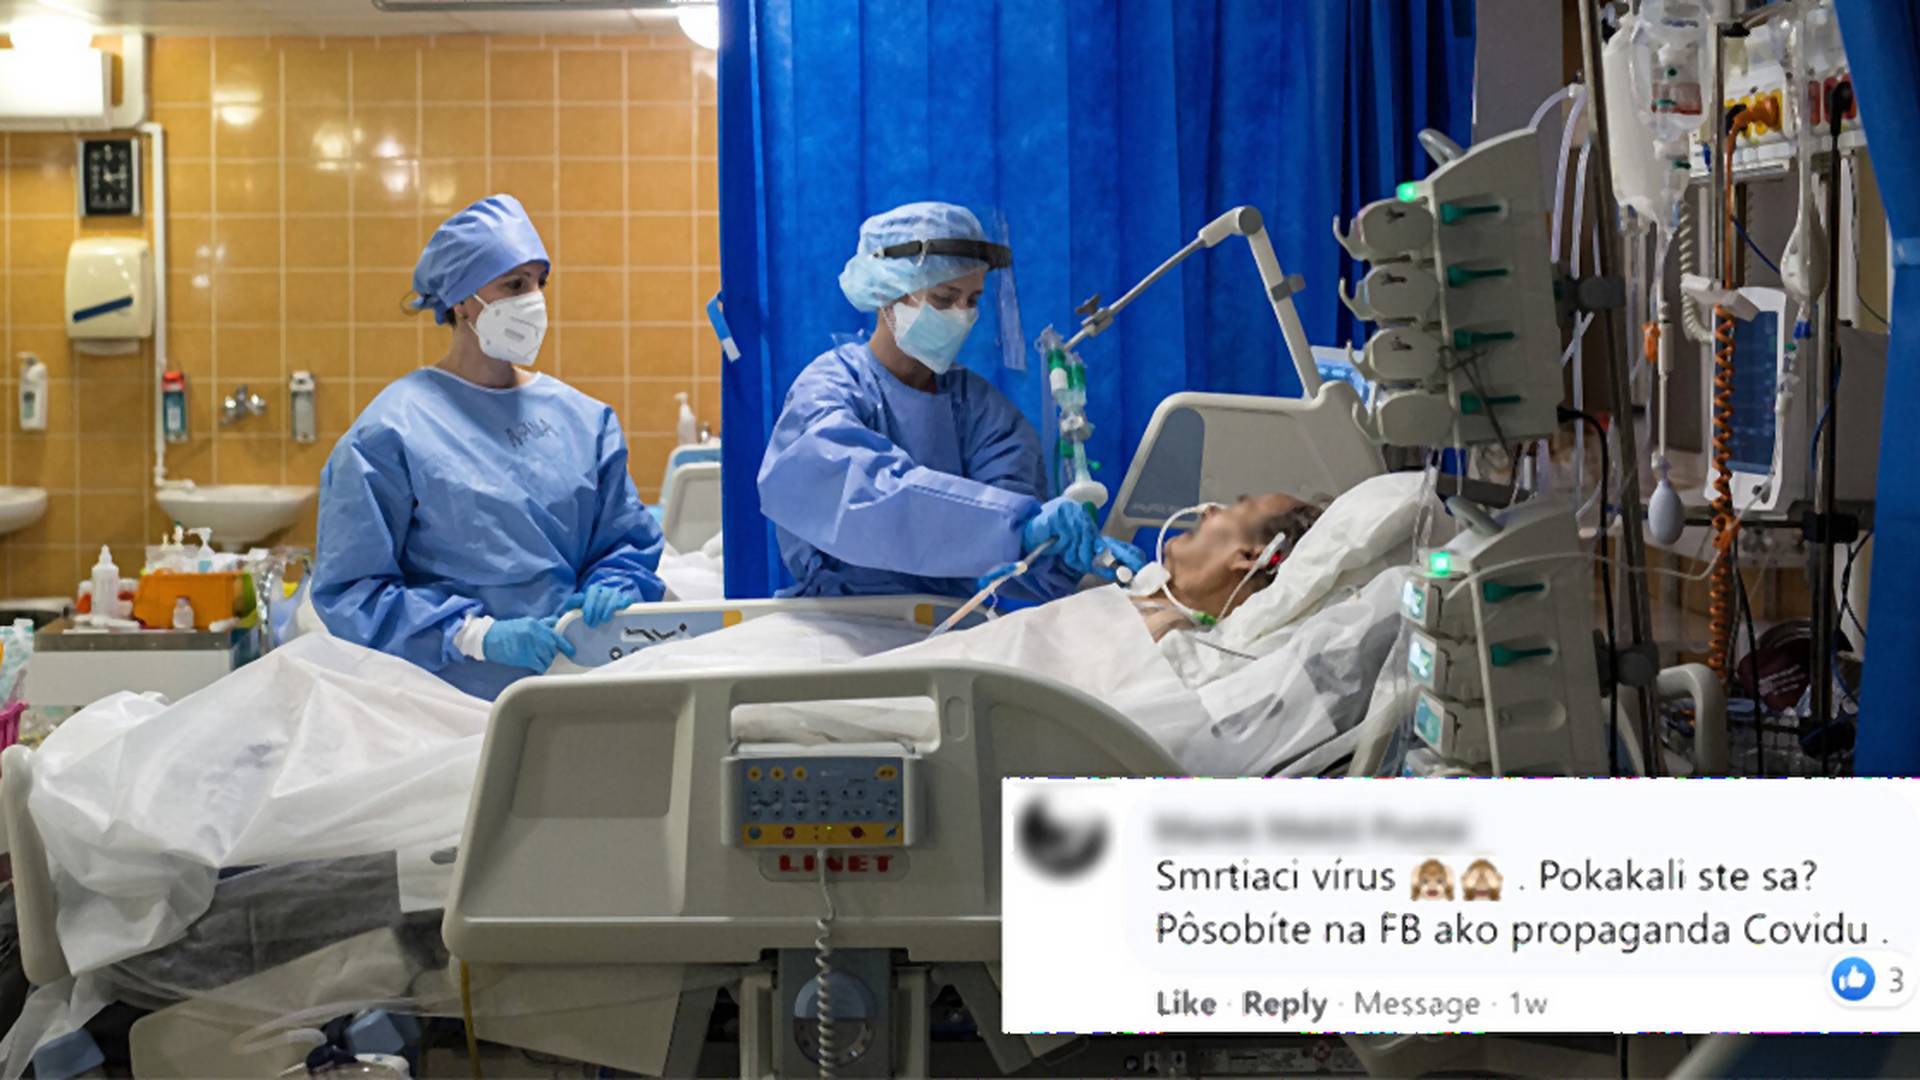 Ministerstvo zdieľalo skutočné zábery zo slovenskej nemocnice v kontraste s hoaxami o covide